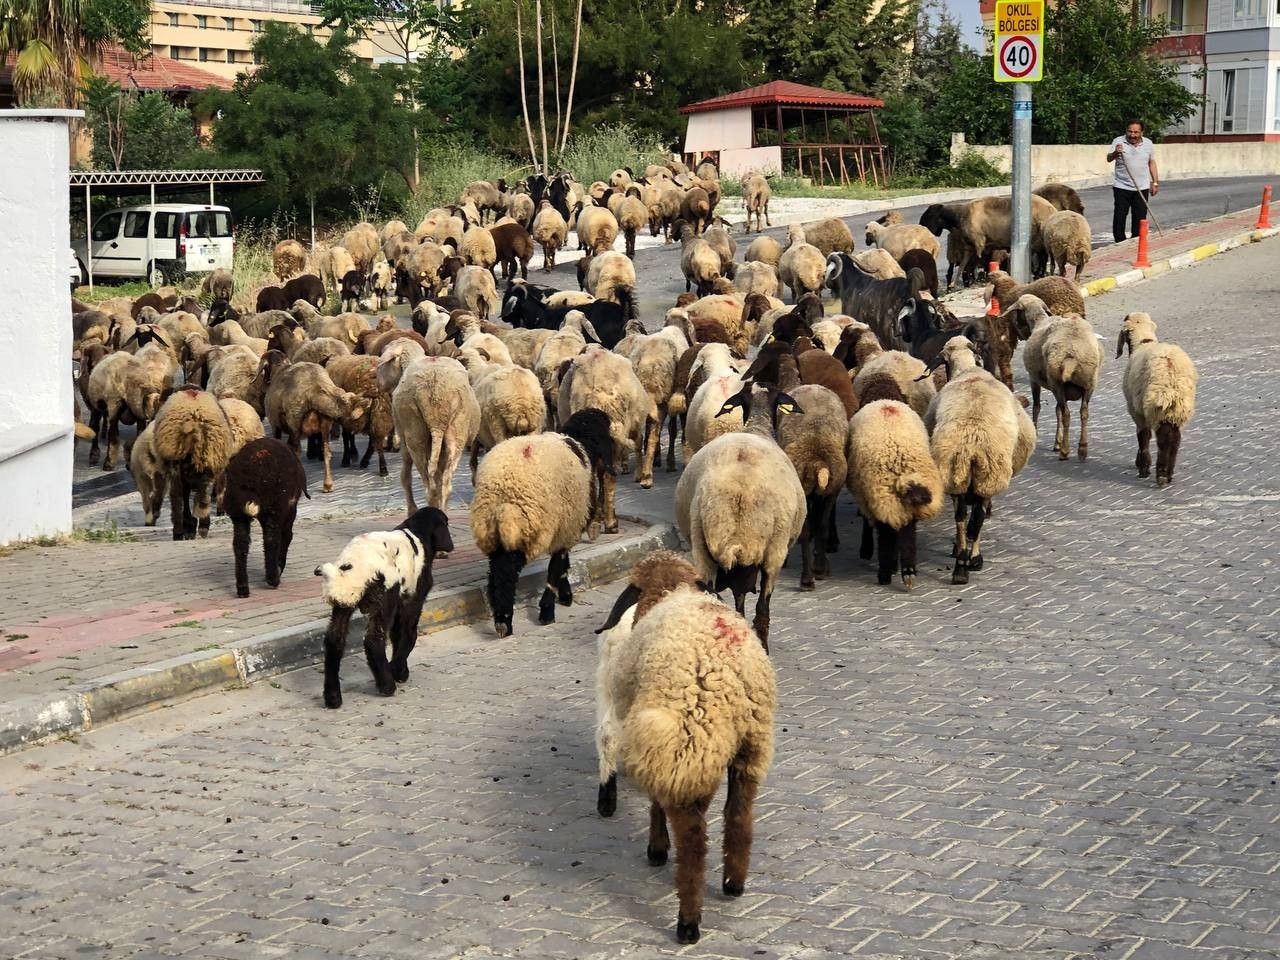 Tam kapanmayla birlikte boş kalan sokaklar koyun sürülerine ev sahipliği yapıyor